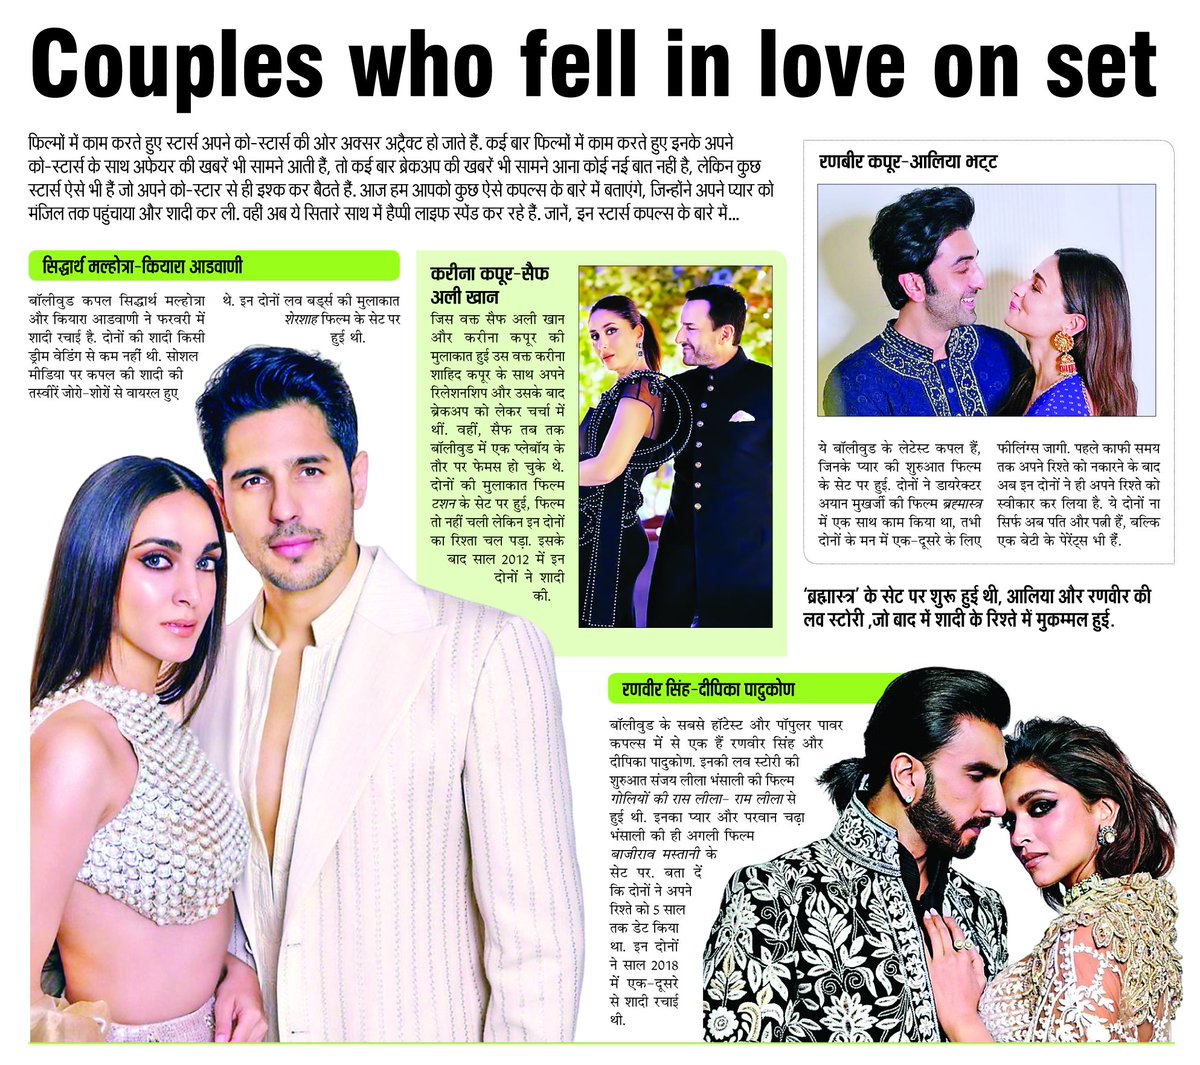 Couples who fell in love on set.
#KiaraAdvani #SidharthMalhotra #KareenaKapoorKhan #SaifAliKhan #AliaBhatt #RanbirKapoor #DeepikaPadukone #RanveerSingh #bollywoodcelebrities